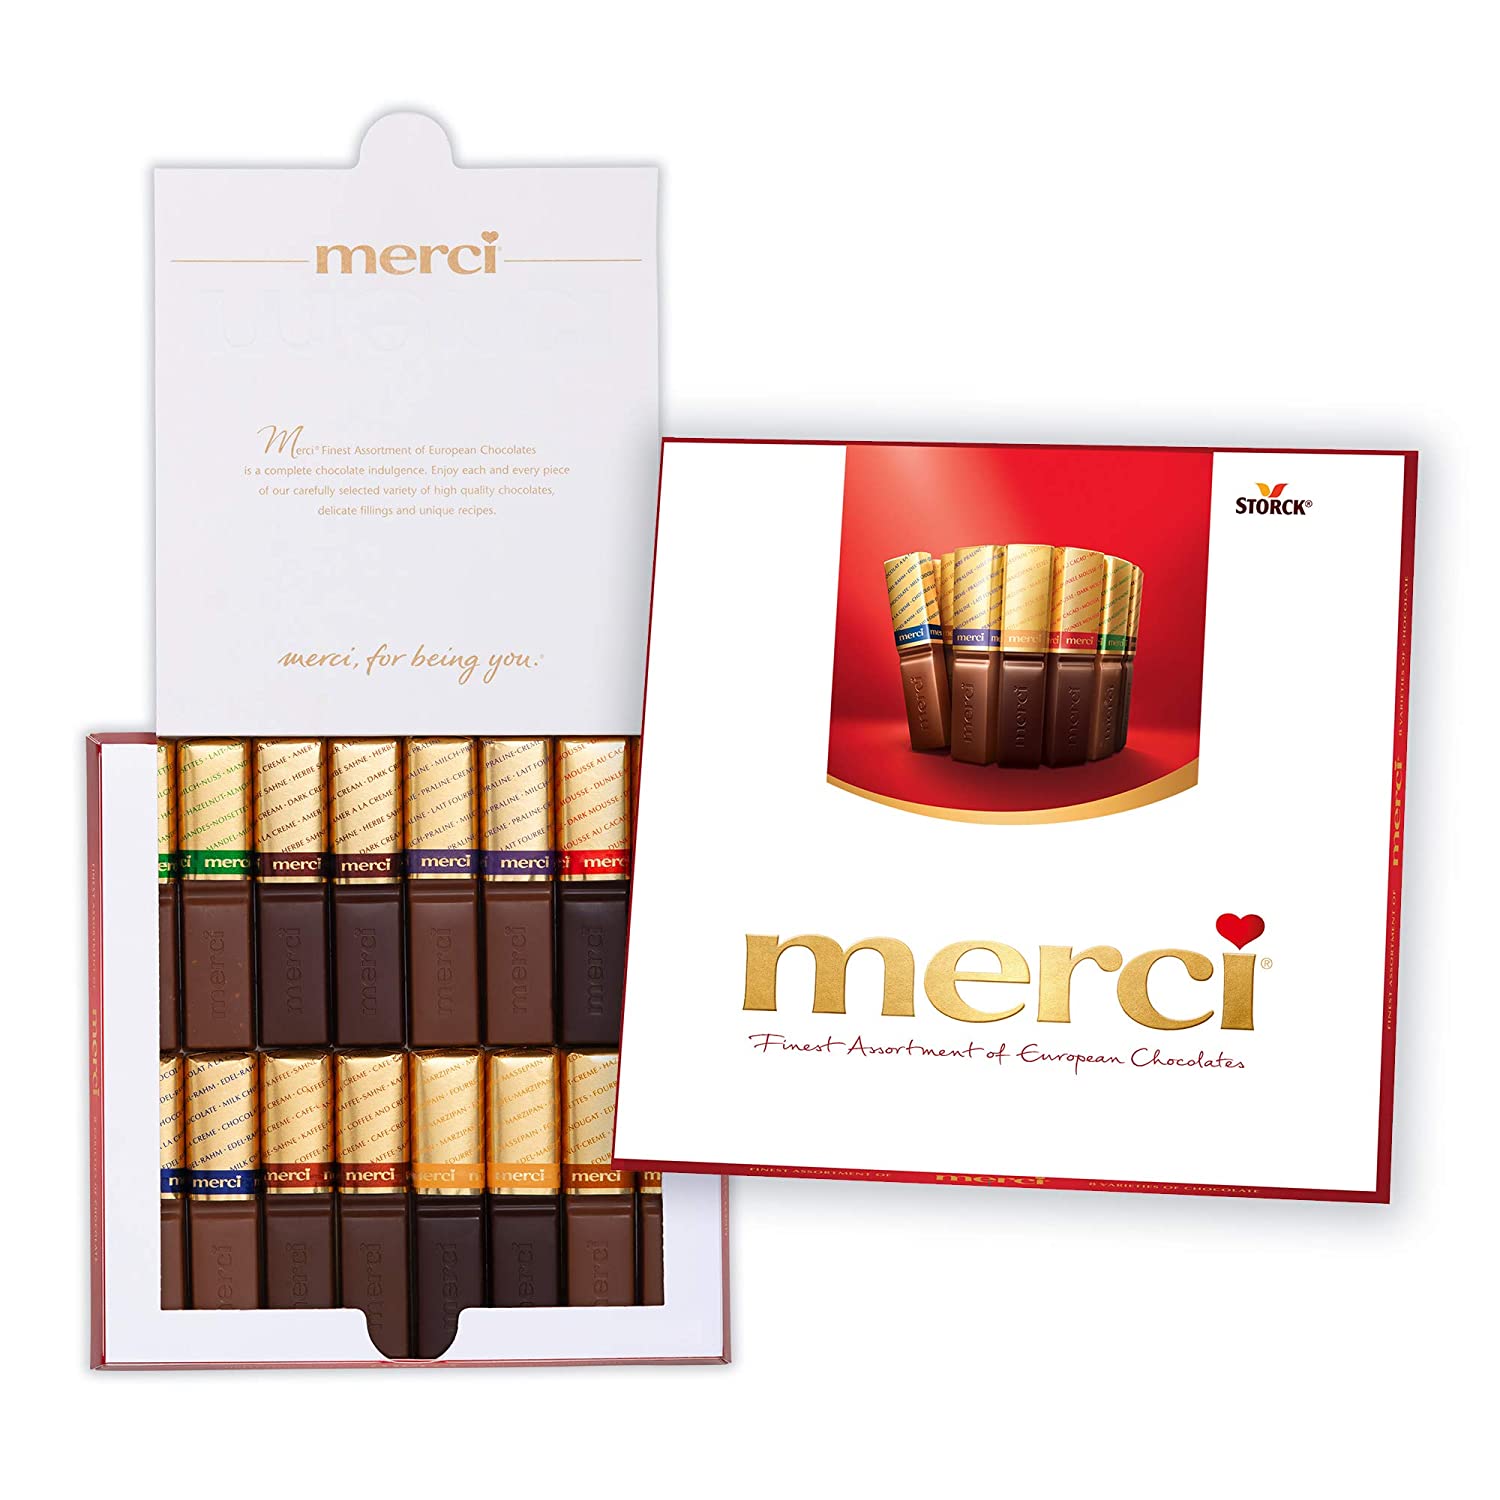 3. MERCI Eight European Chocolates Gift Box